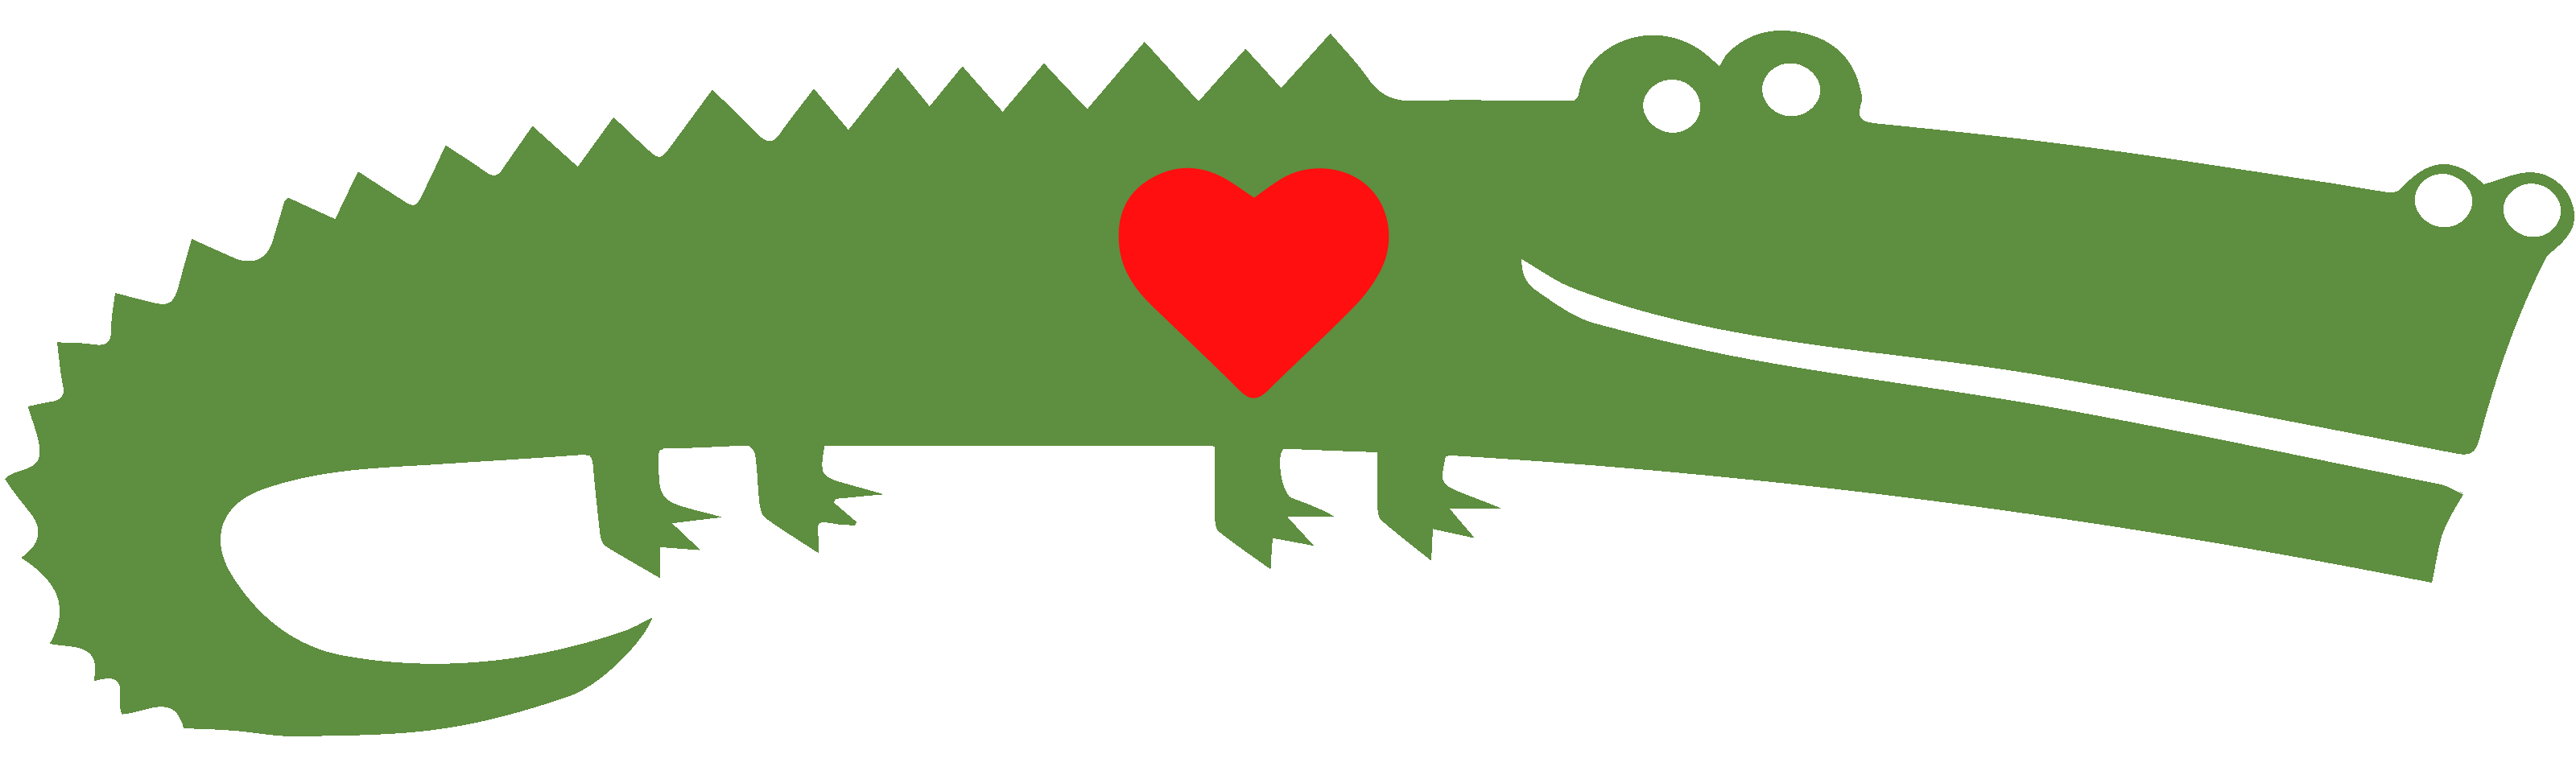 florida clipart alligator